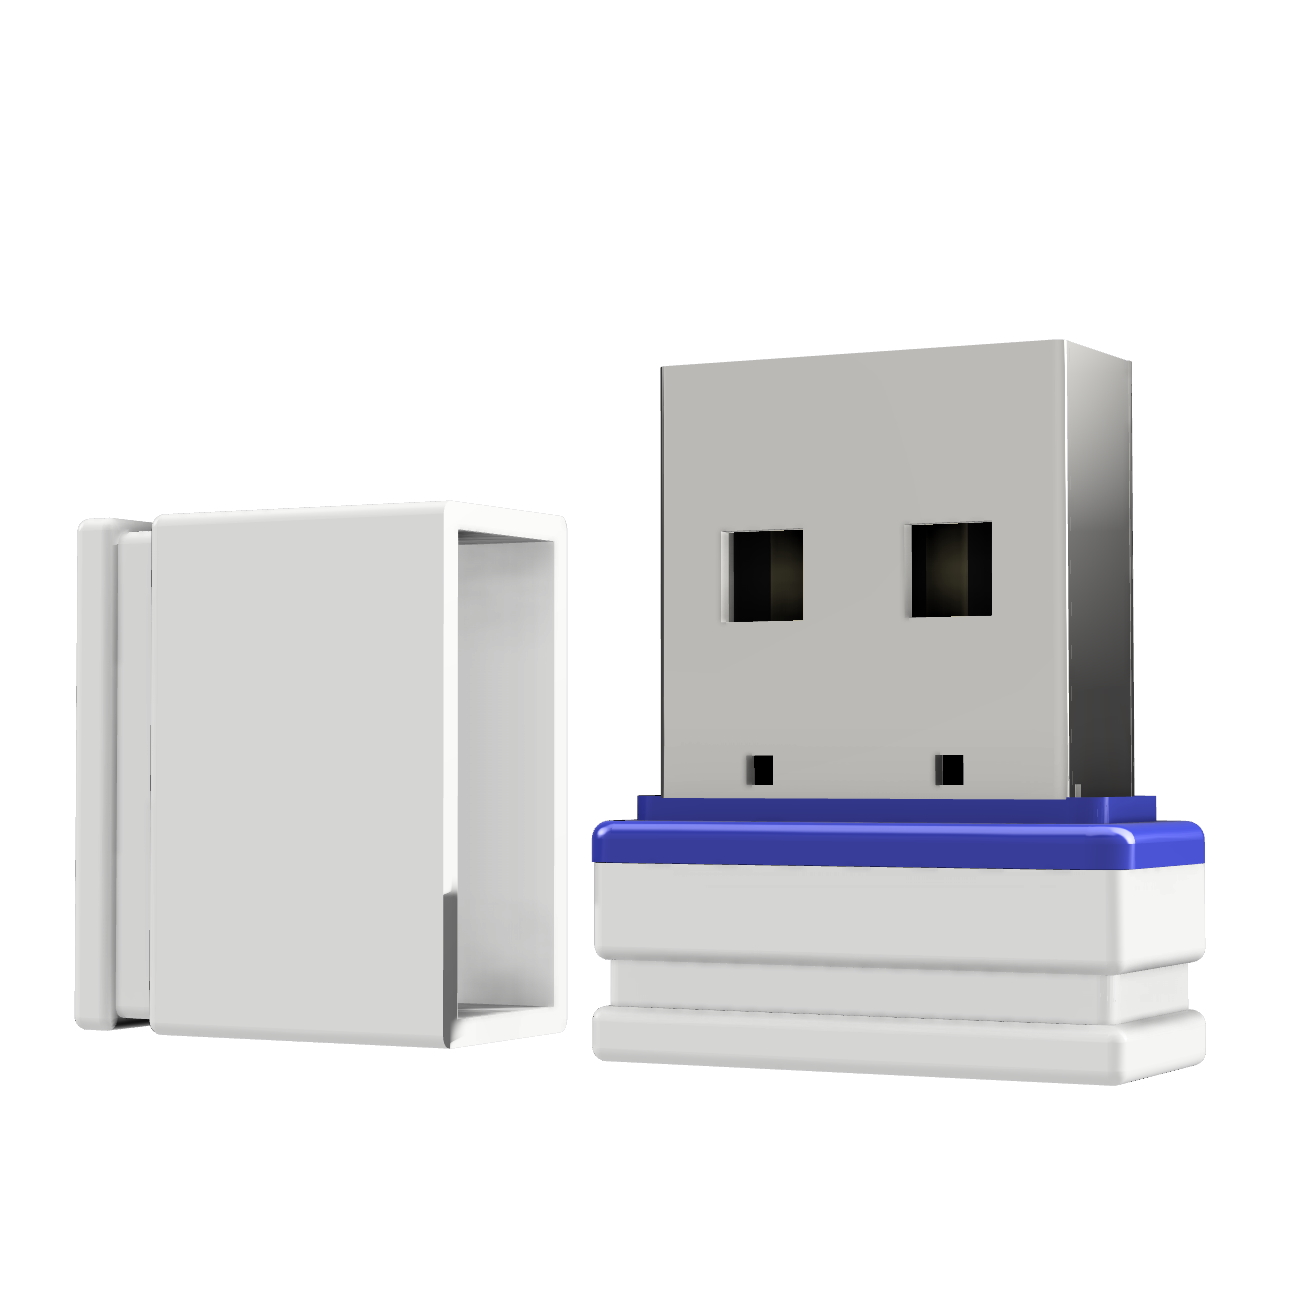 32 GB) (Weiss/Blau, Mini P1 USB ®ULTRA USB-Stick GERMANY